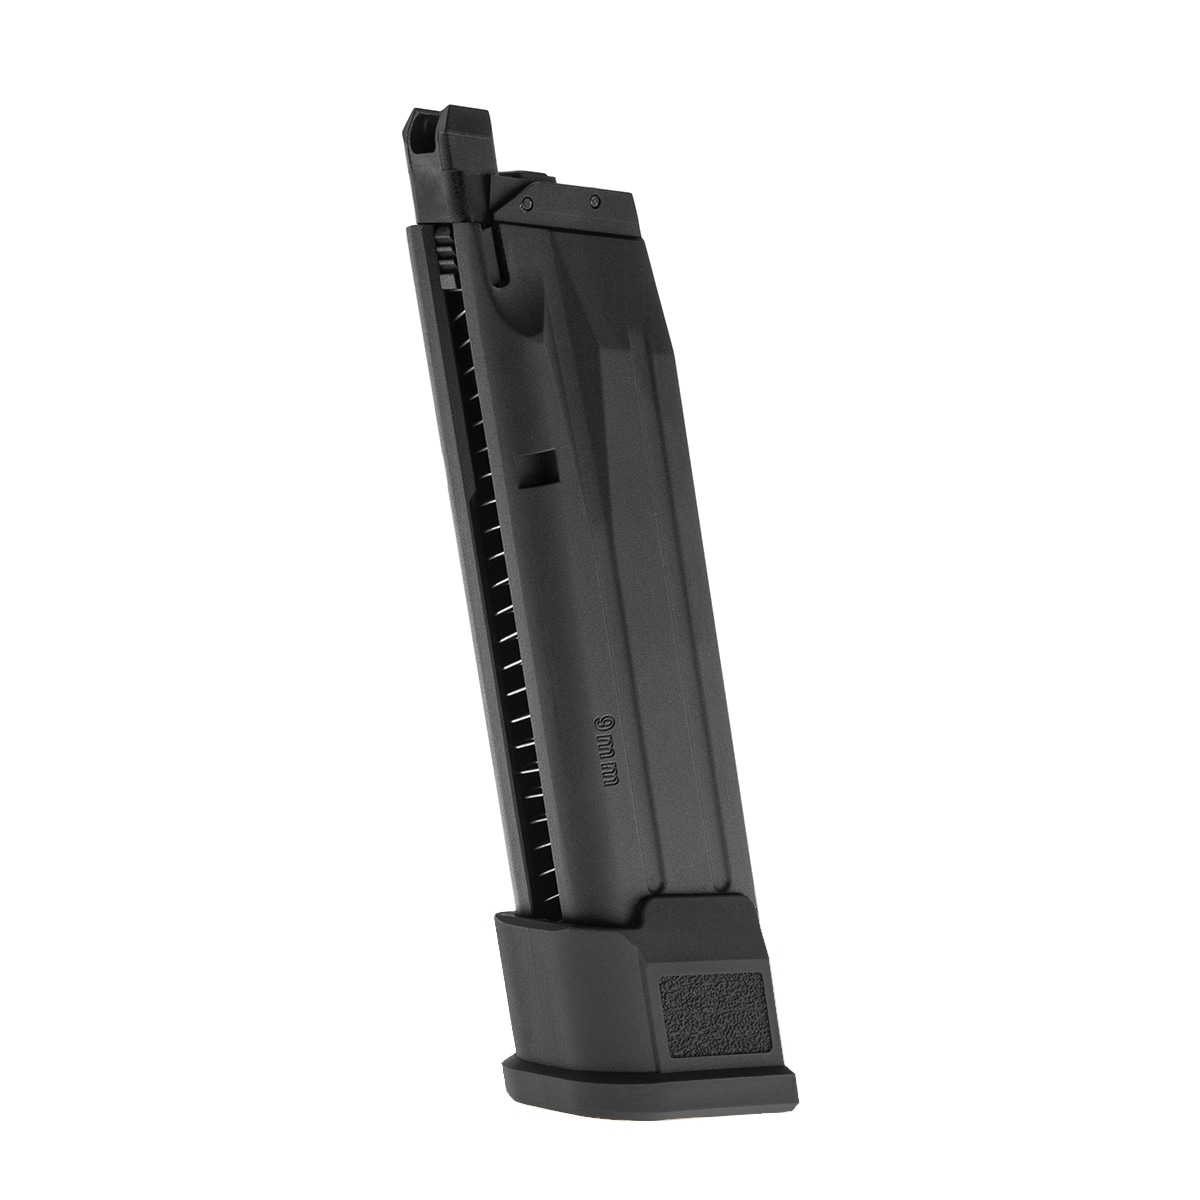 Магазин ASG Sig Sauer для пістолета GBB P320 M17 - чорний